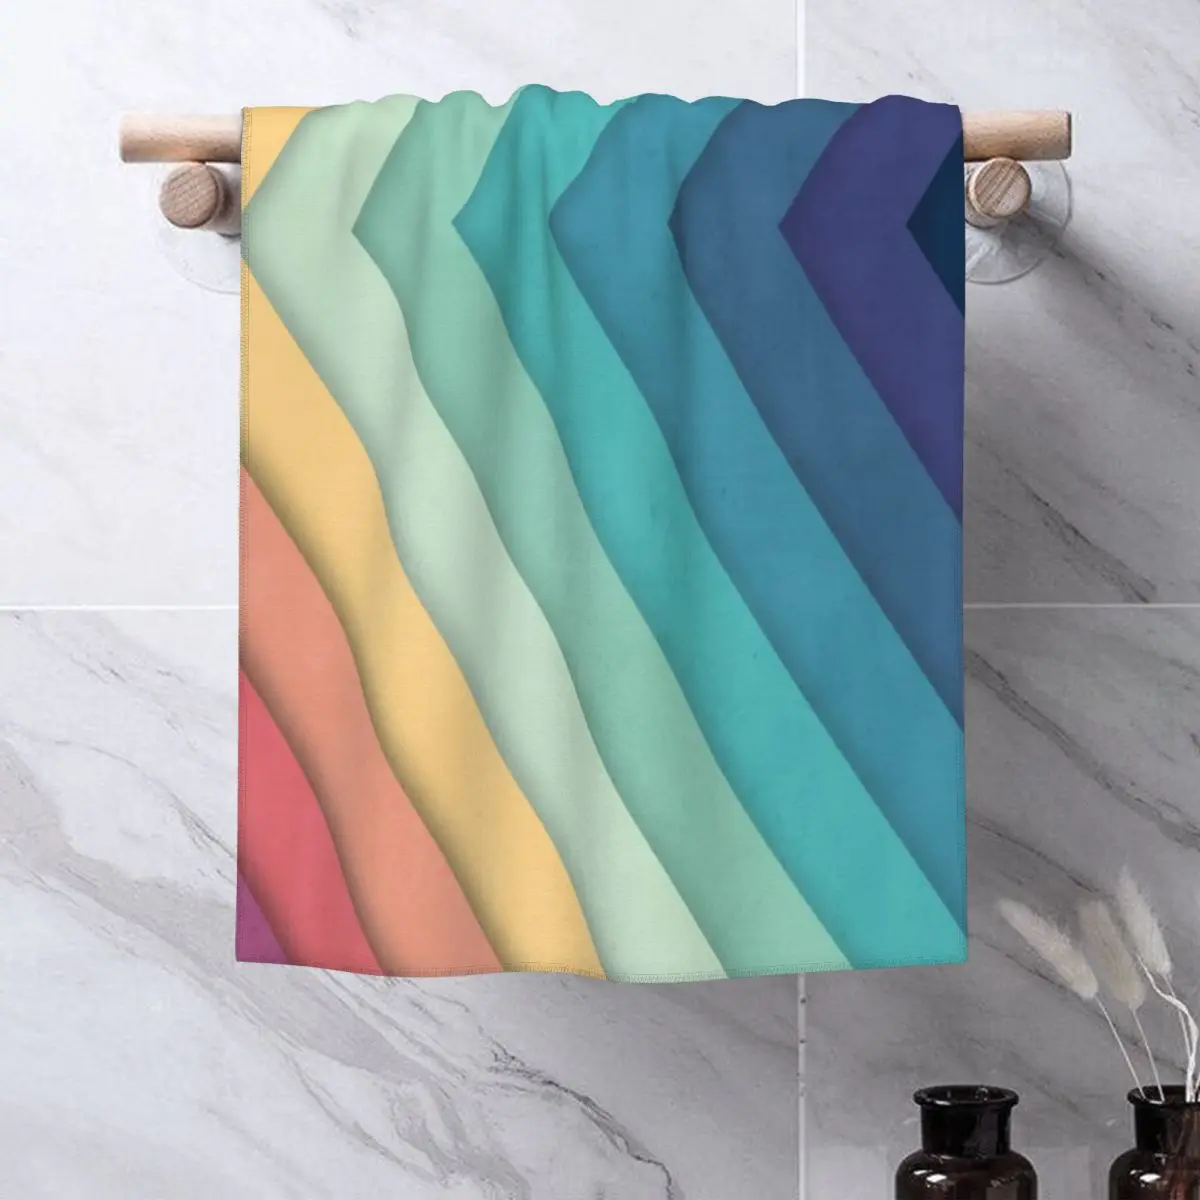 

Ретро Шевроны 002 полотенце s набор полотенец для лица полотенце банные халаты банное полотенце для взрослых